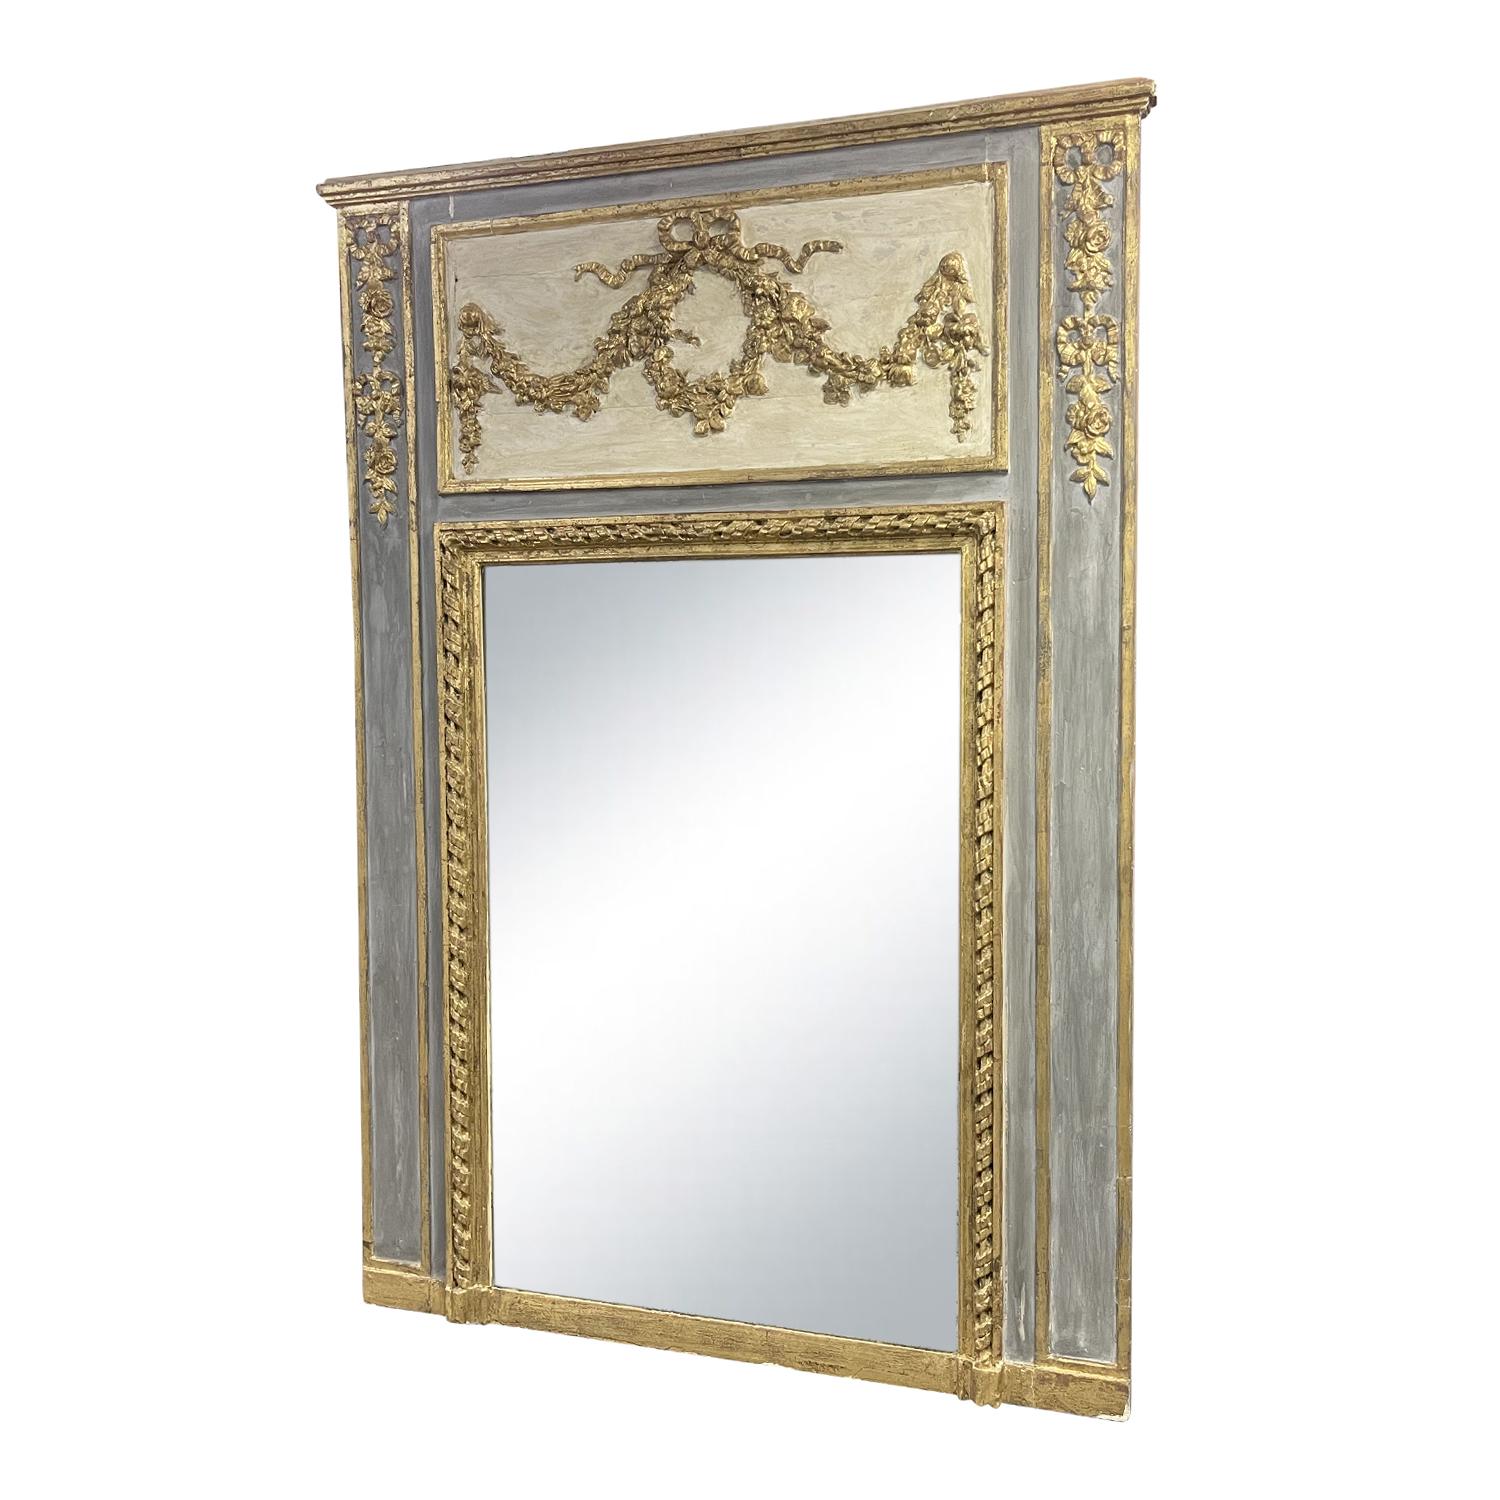 Miroir ancien français du XIXe siècle, patiné en gris-bleu. Bois partiellement doré et verre miroir d'origine, en bon état. Le haut du cadre du miroir trumeau Louis XVI est richement décoré et doré avec des guirlandes, des motifs floraux et des